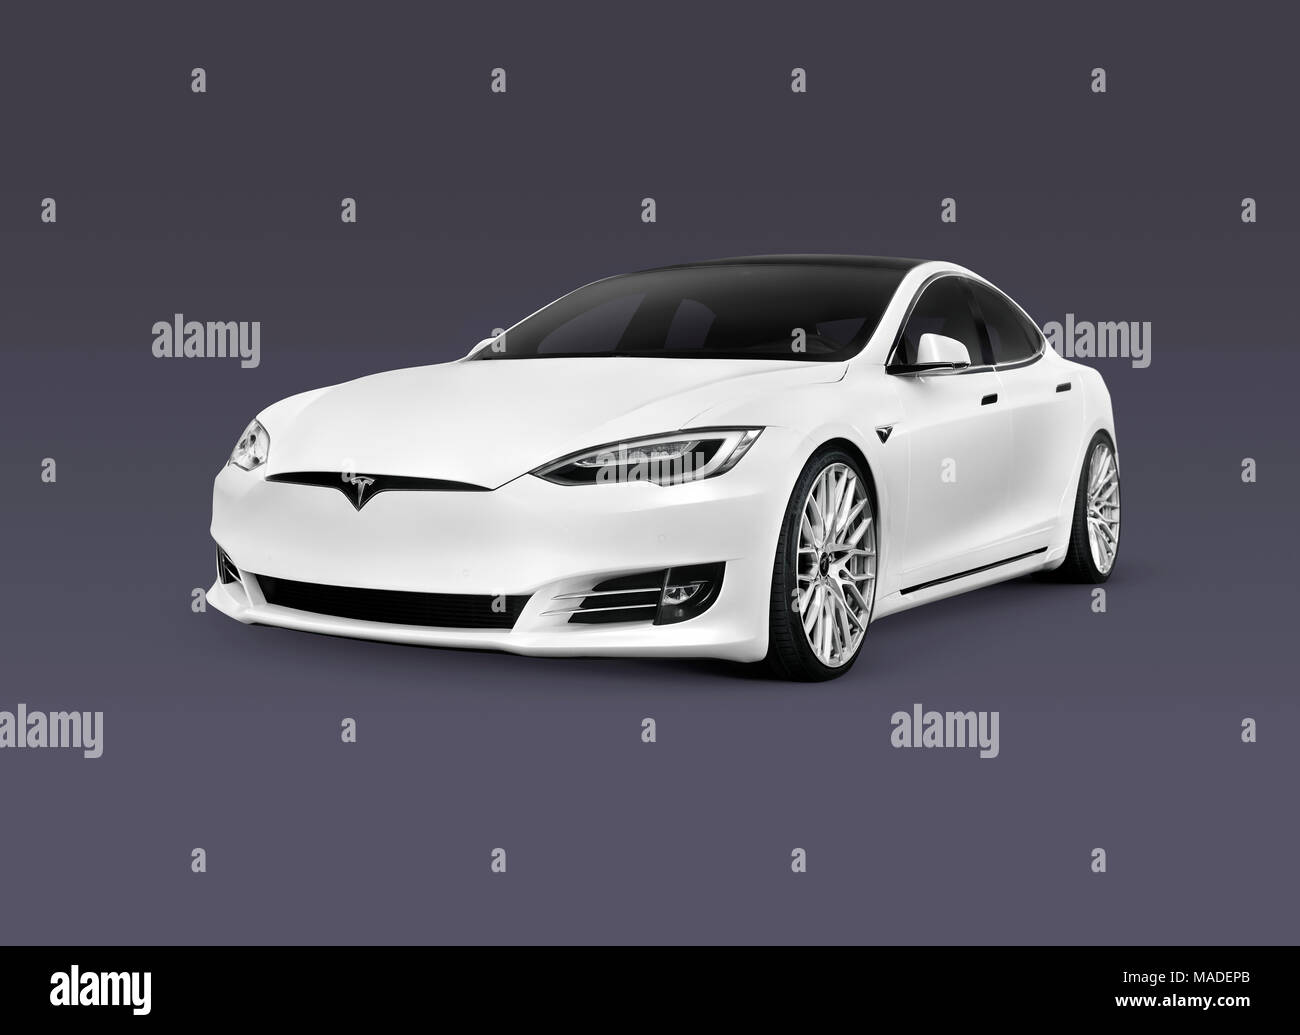 Führerschein und Ausdrucke bei MaximImages.com–2018 Tesla Model S, weißes, luxuriöses Elektroauto, isoliert auf dunkelblauem grauem Hintergrund mit Beschneidungspfad Stockfoto